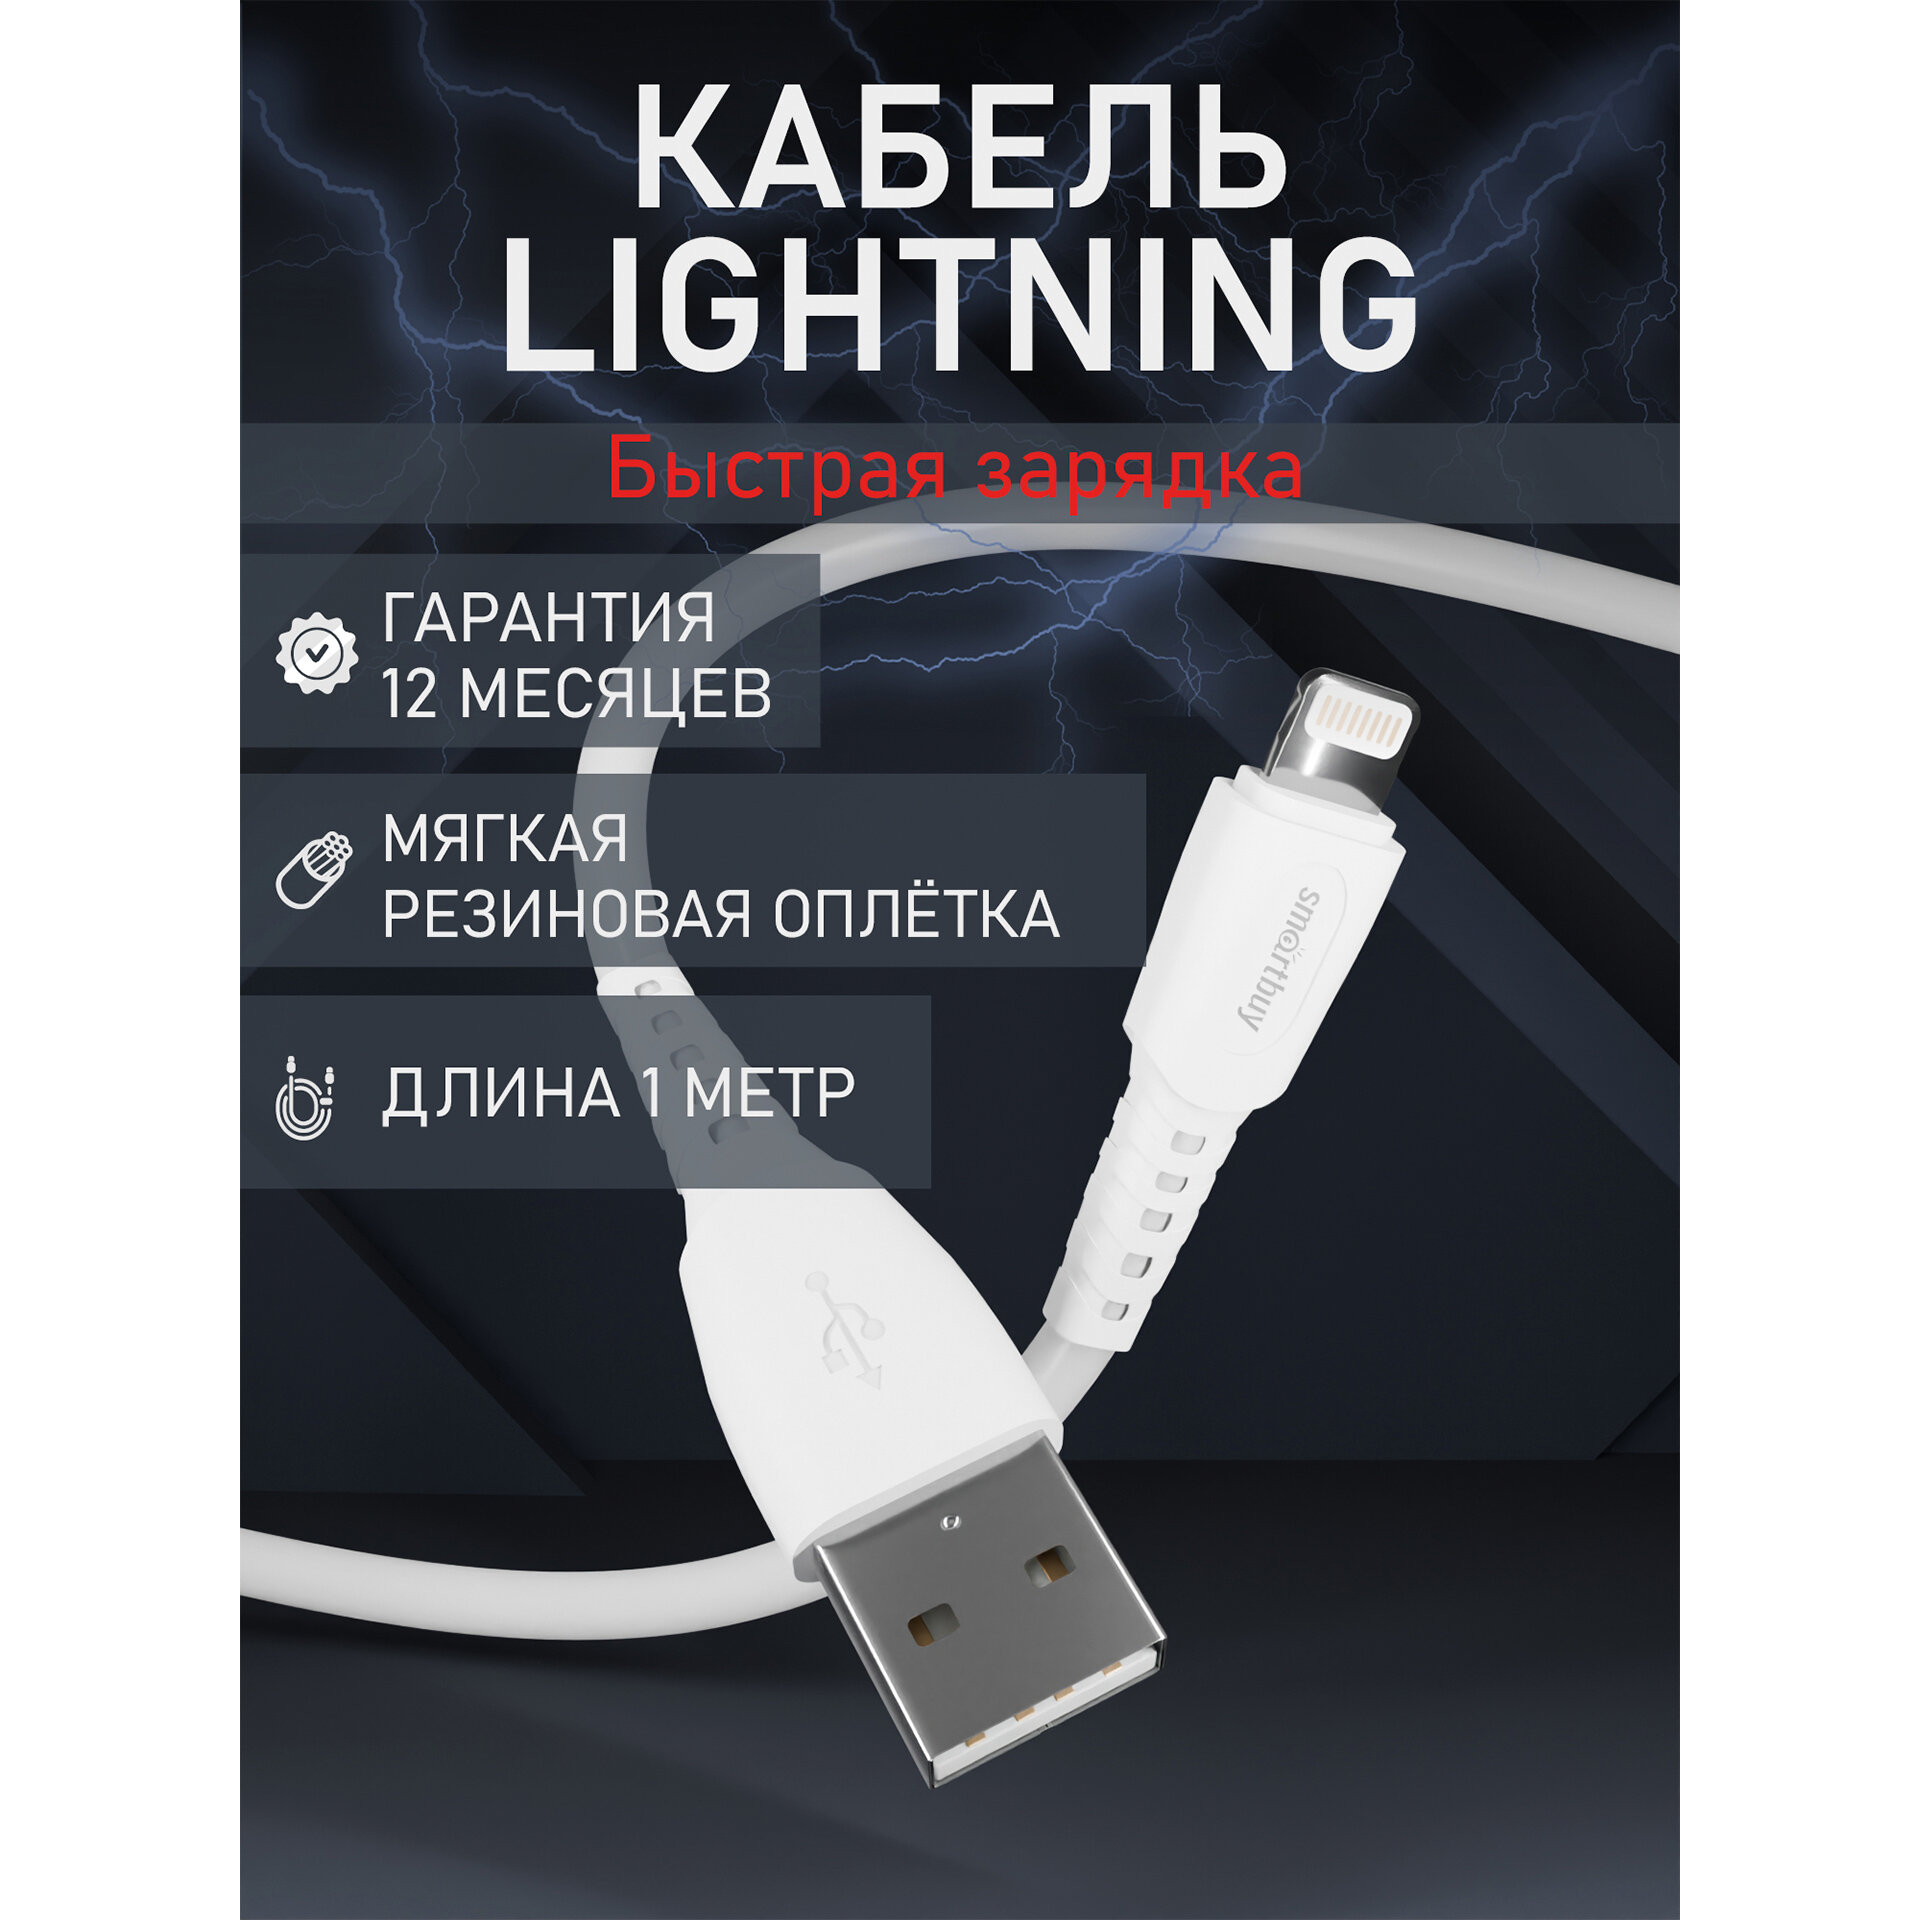 Кабель для зарядки и передачи данных S40 Lightning белый, 2.4 А, 1 м, Smartbuy (iK-512-S40w)